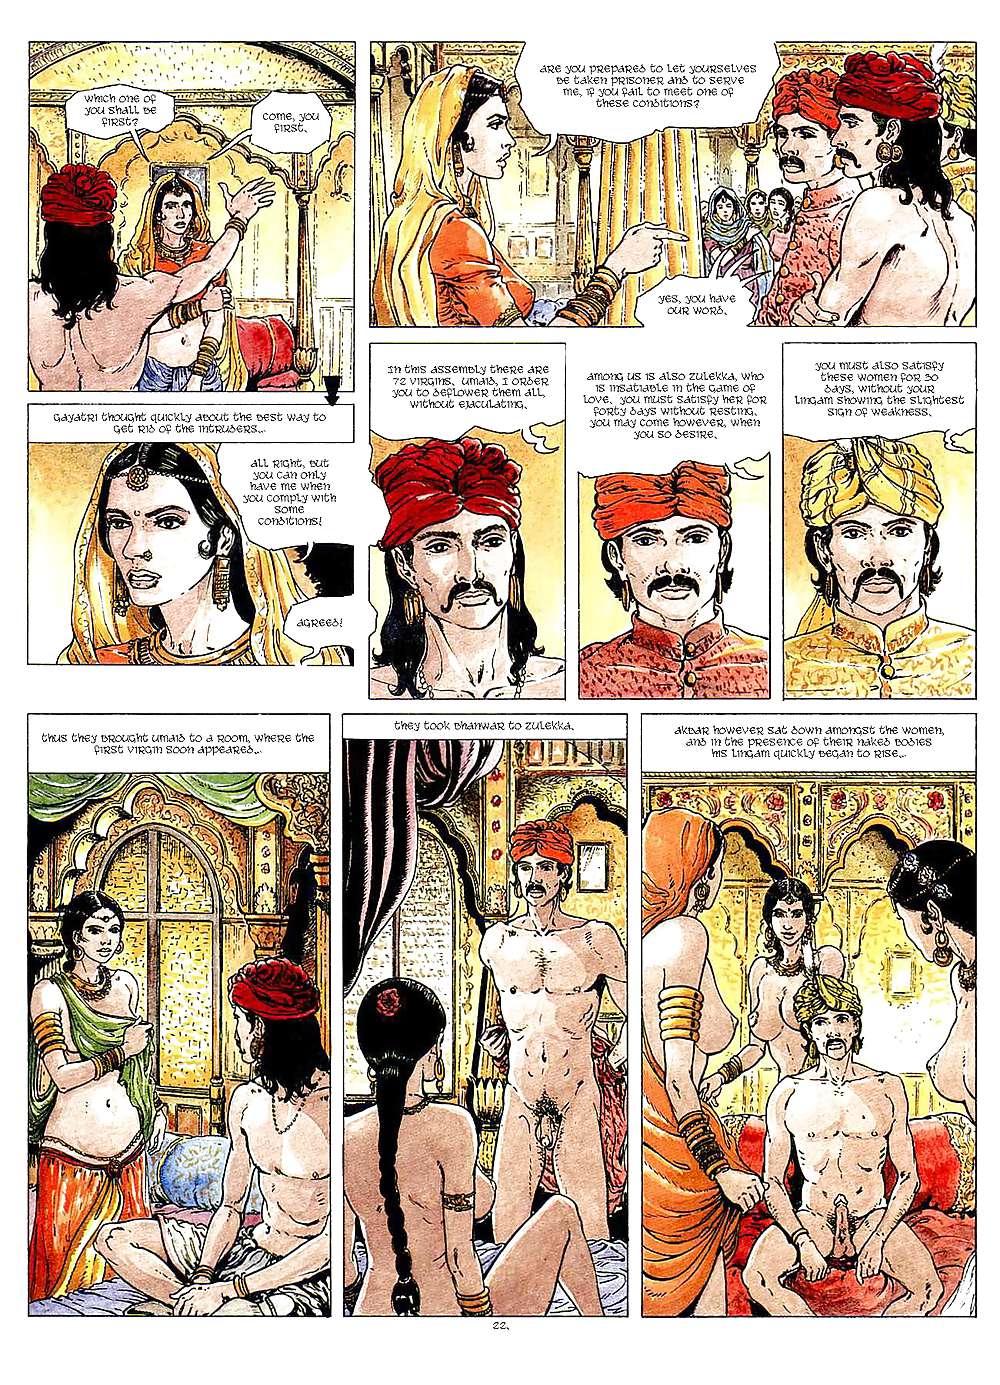 Erotic Comic Art 40 - Kama-Sutra #19691155